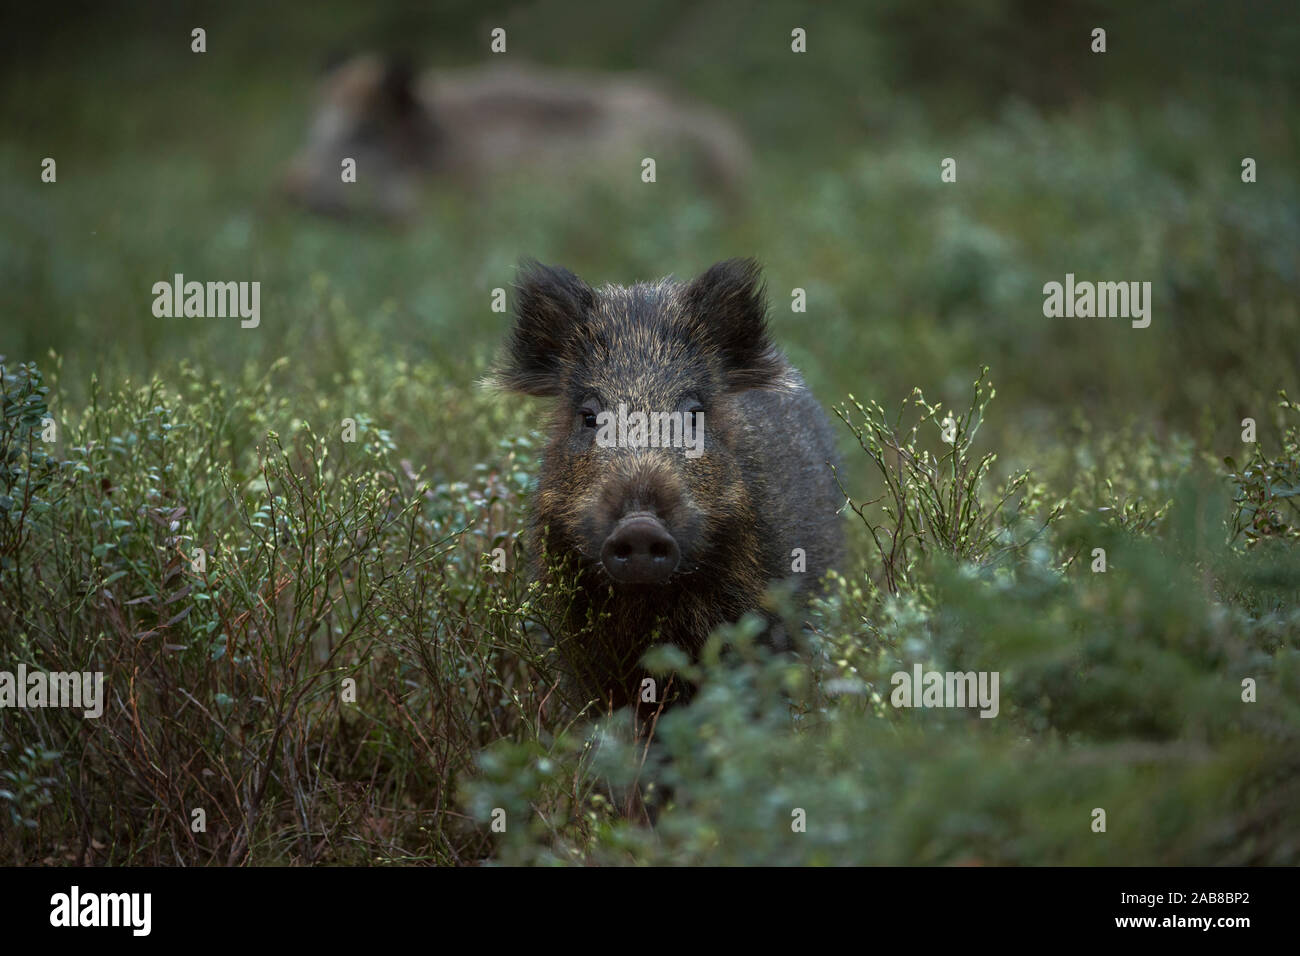 Wild Boar / Wild Hog / Feral Pig / Wildschwein ( Sus scrofa ) in the undergrowth, wildlife, Europe. Stock Photo